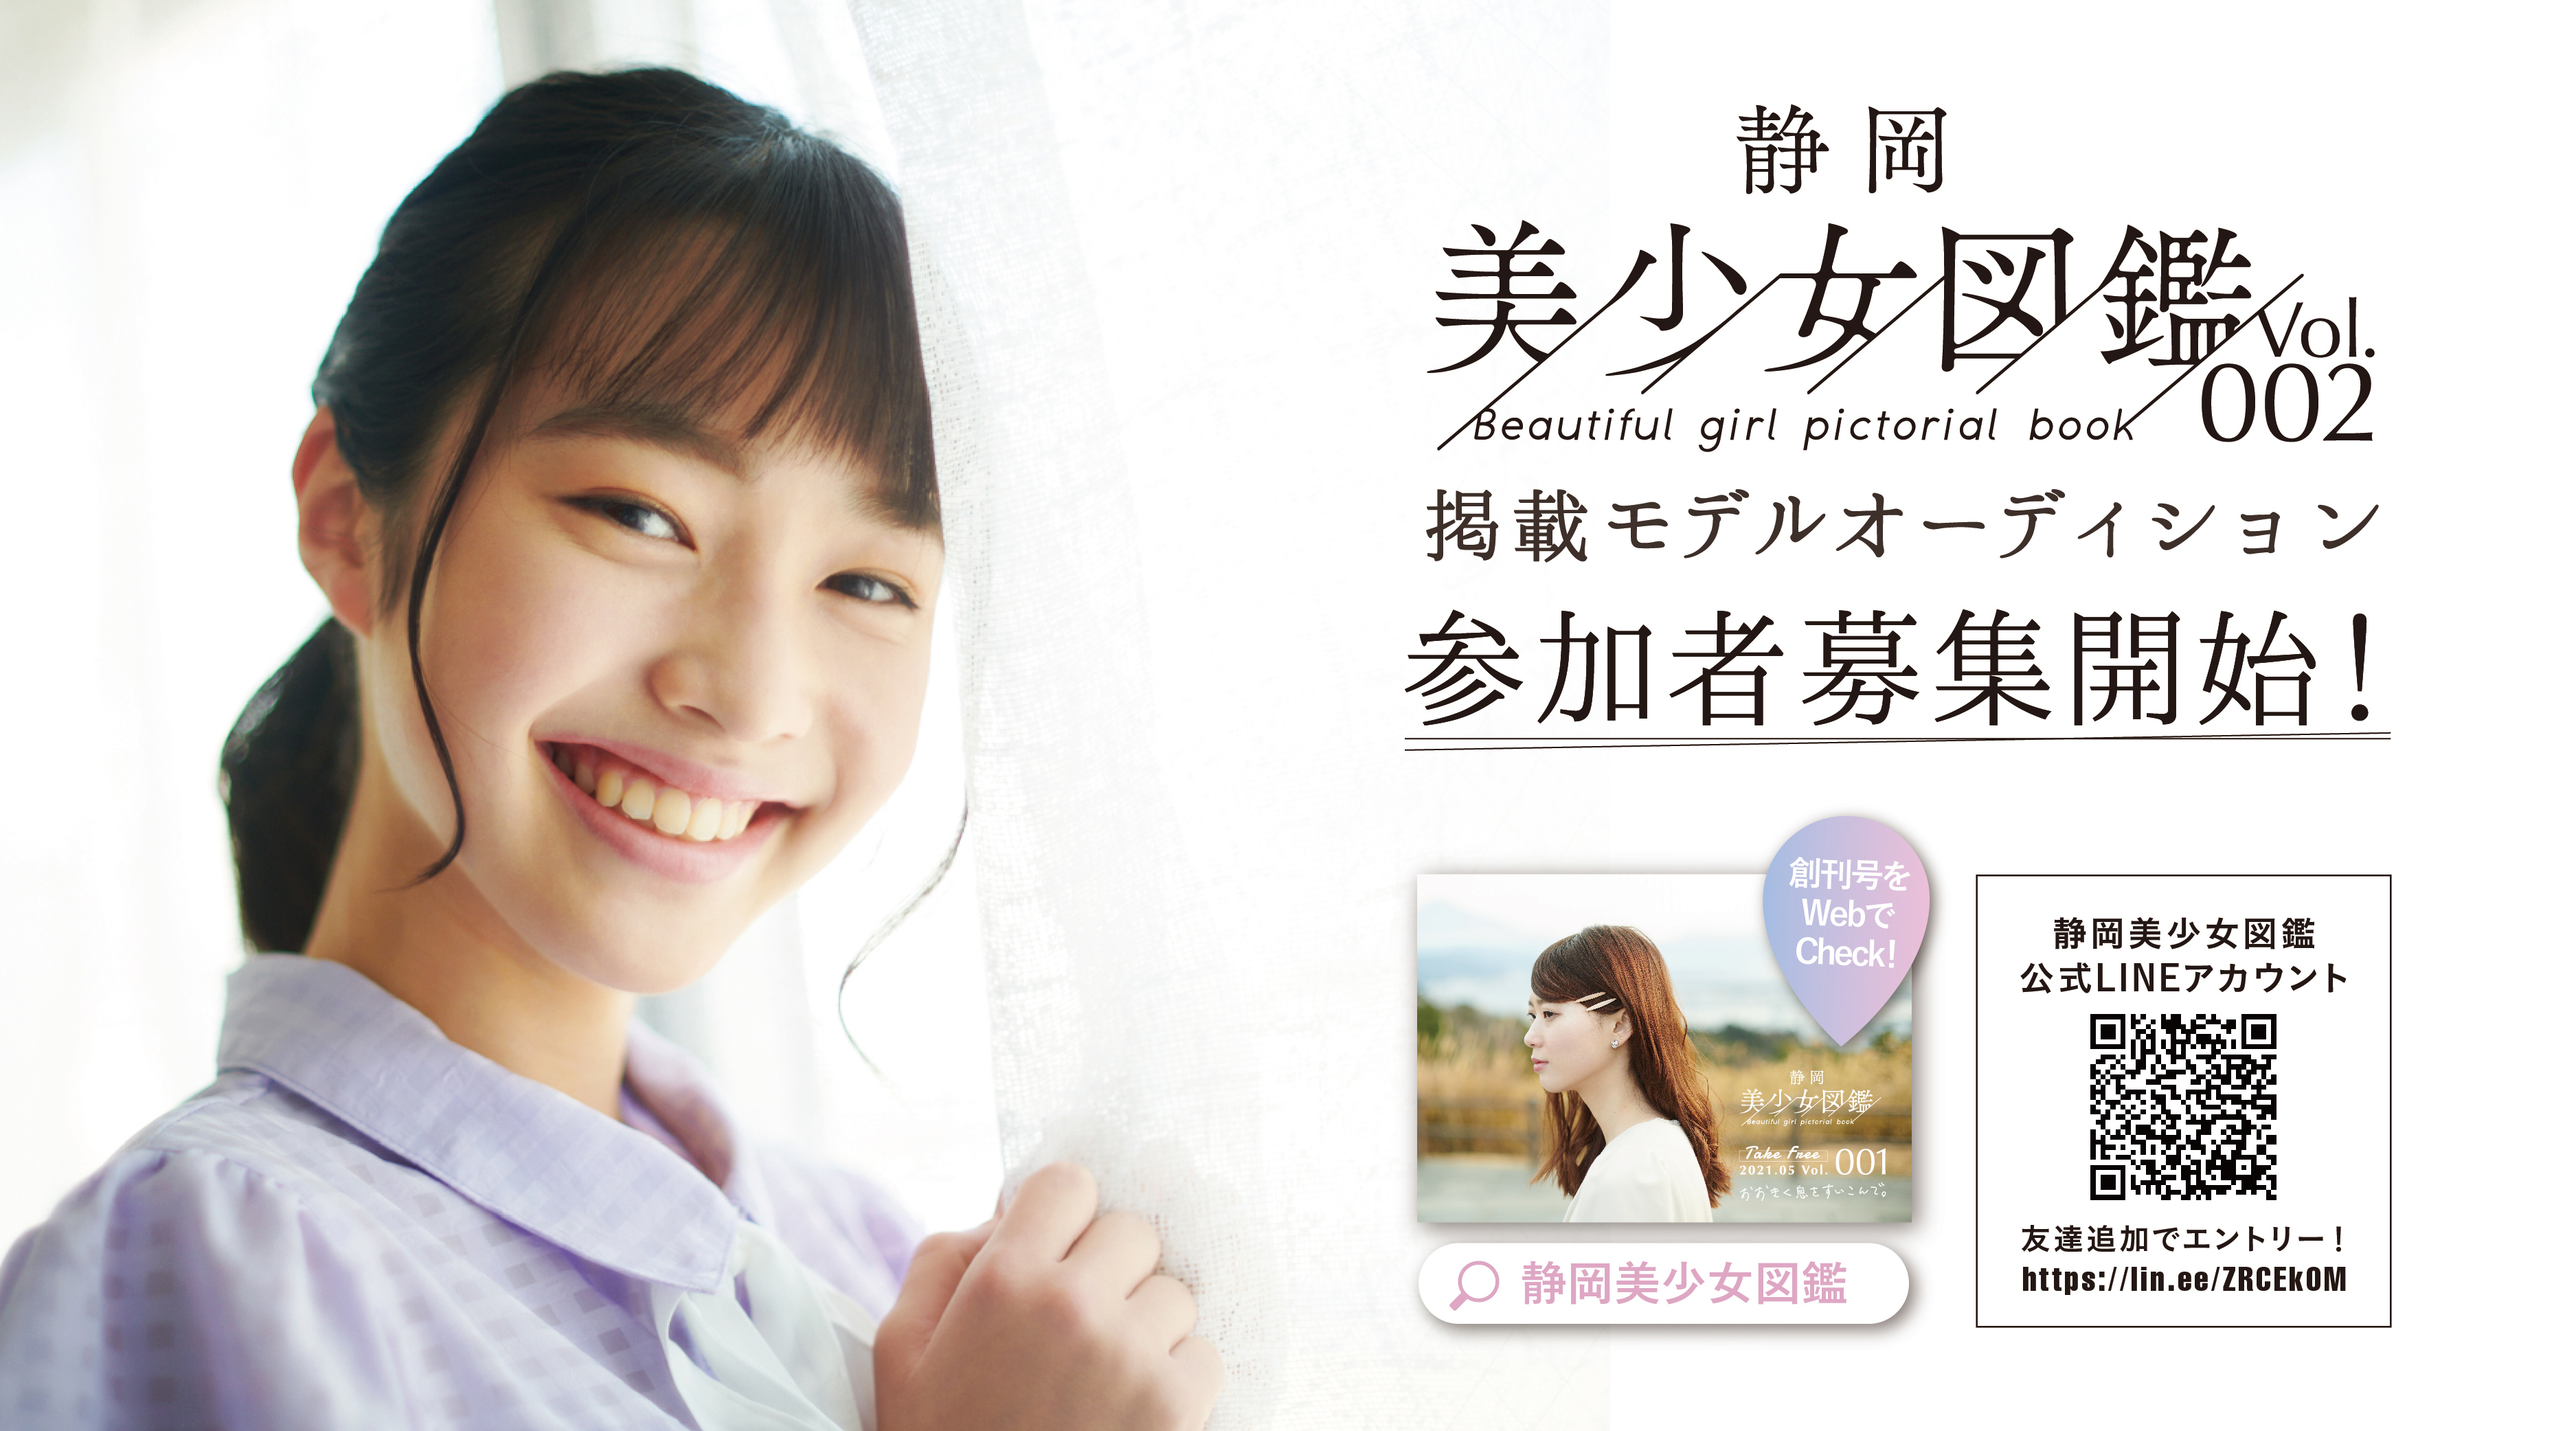 静岡美少女図鑑 Vol 2 掲載モデルオーディション が今夏に開催決定 株式会社エヌのプレスリリース